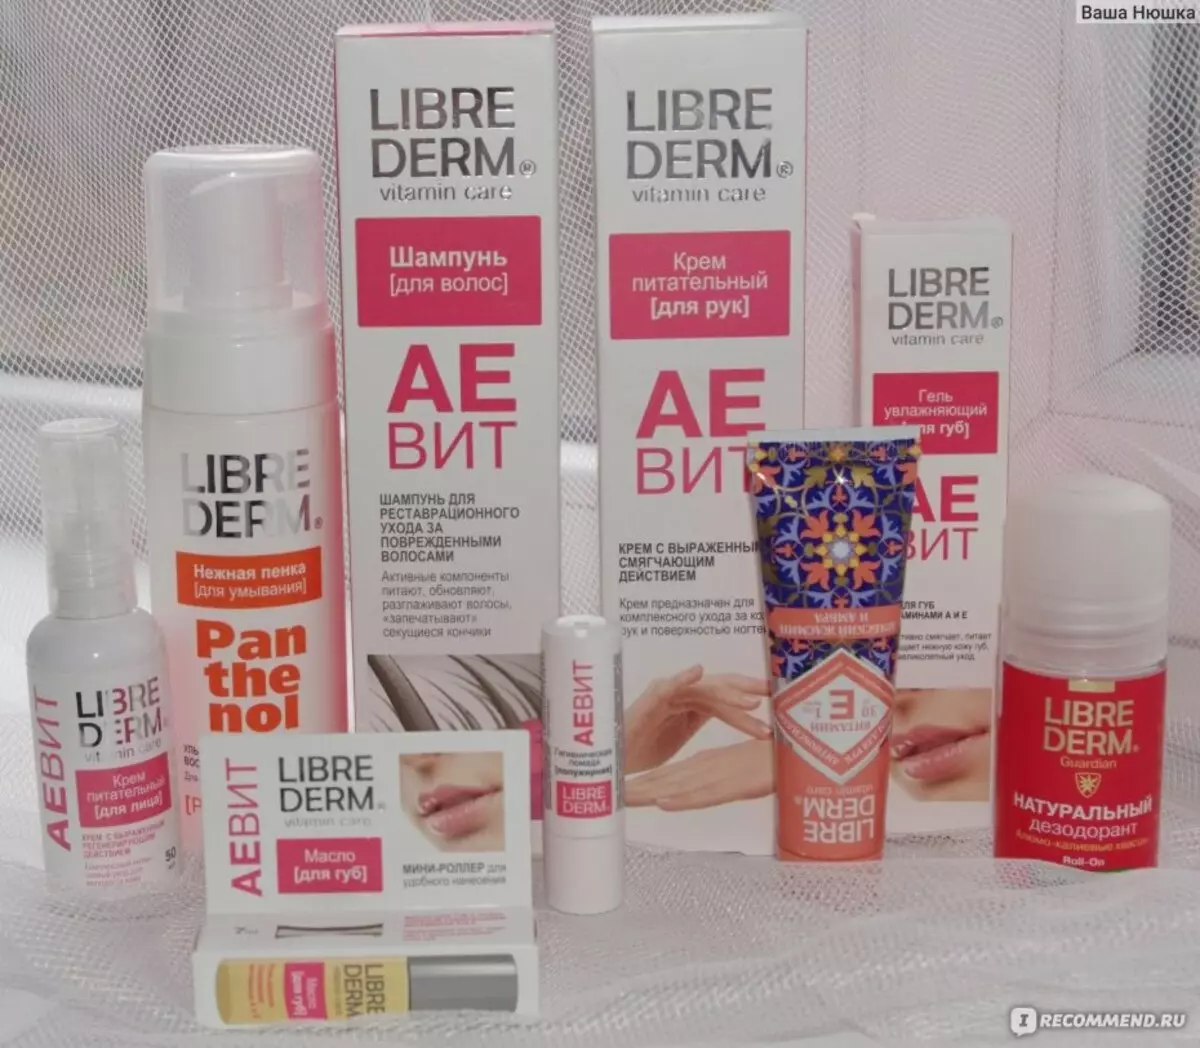 لوازم آرایشی Librederm: انتخاب بودجه توسط سن برای صورت با اسید هیالورونیک و سایر محصولات. بررسی لوازم آرایشی و خریداران 4395_36